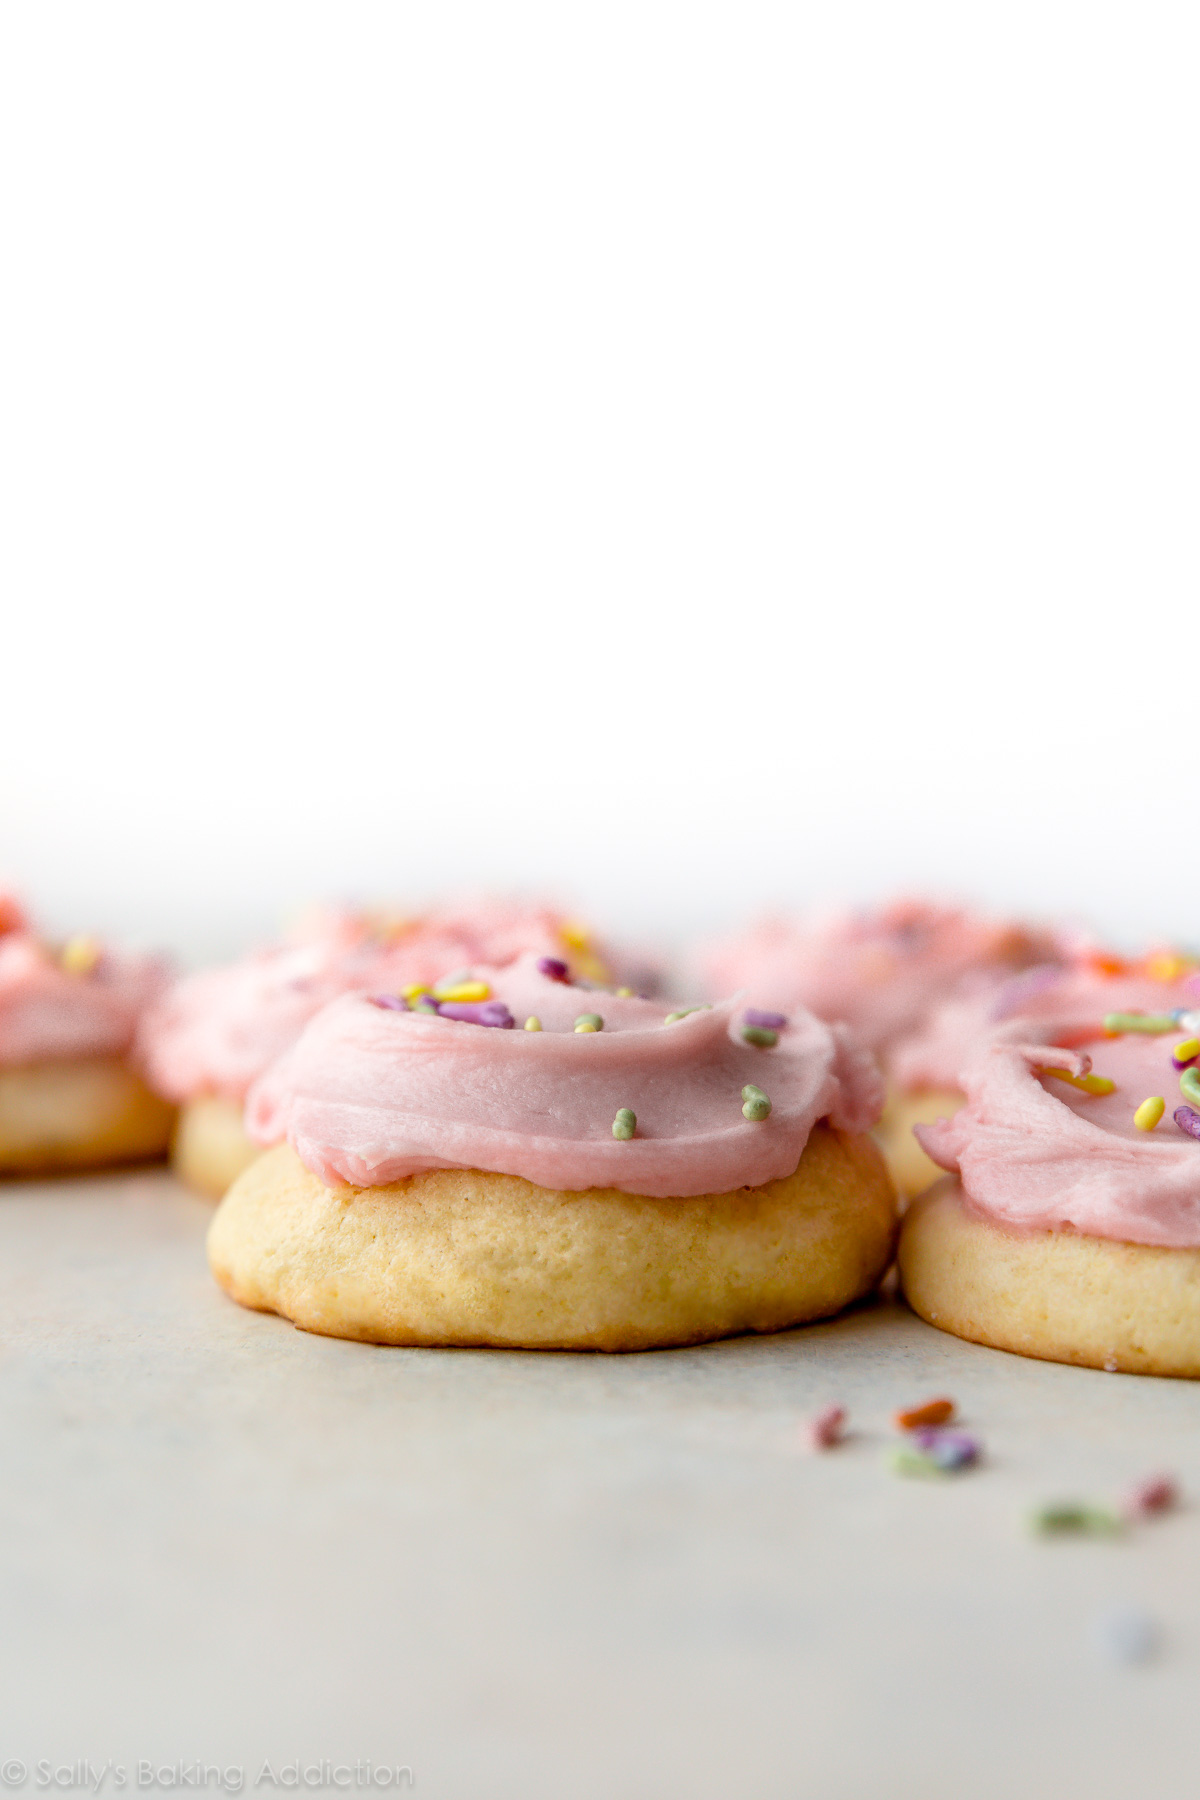 Ces biscuits au sucre moelleux et sucrés sont garnis de crème au beurre rose et de paillettes! Déposer la recette de biscuit au sucre sur sallysbakingaddiction.com